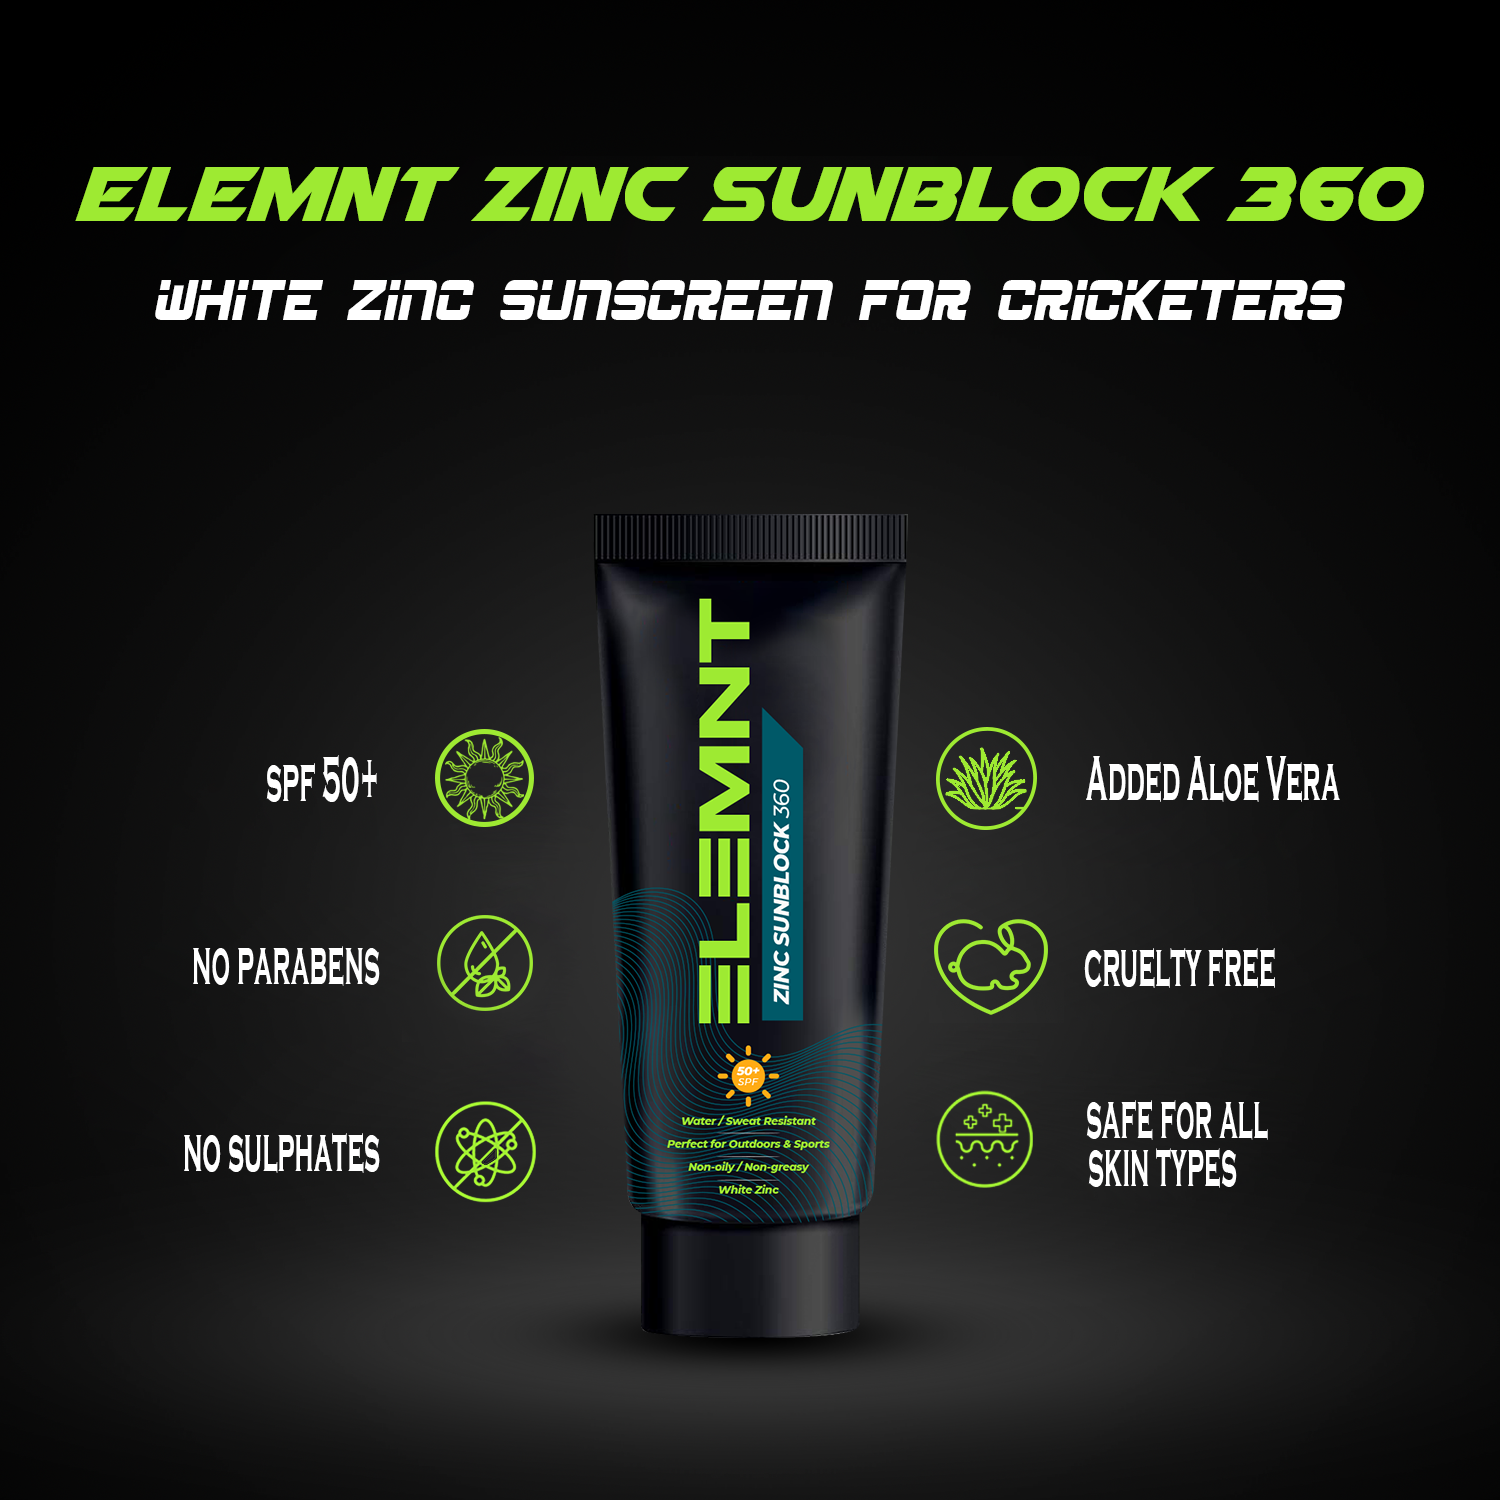 Zinc White Sunscreen Cricketer Elemnt Zinc Sunblock 360